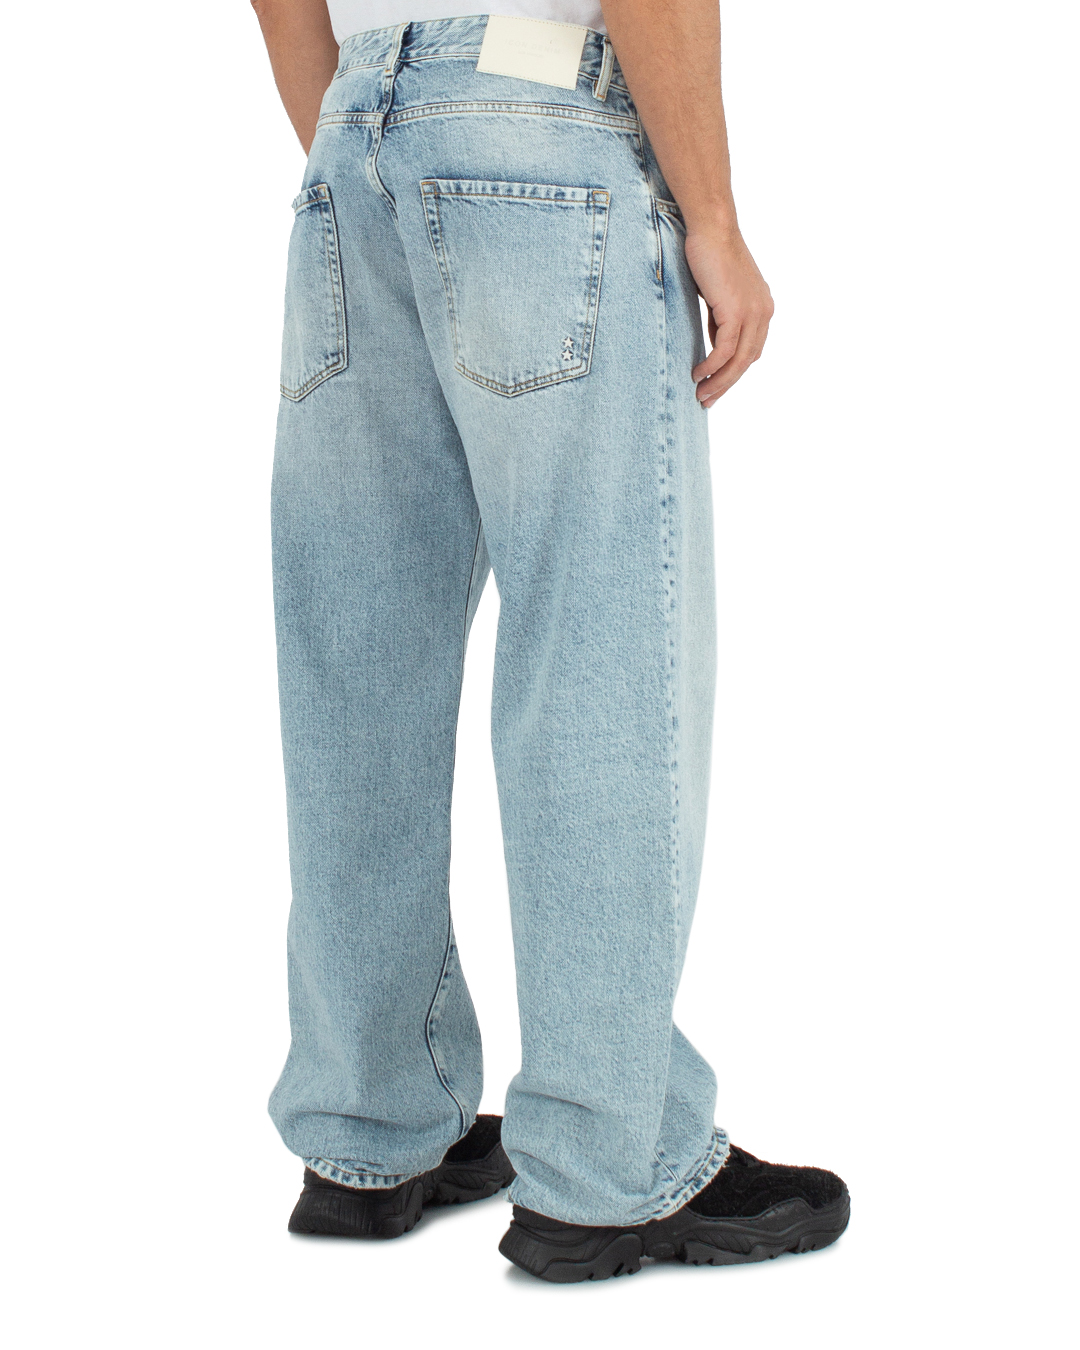 джинсы ICON DENIM WILL ID869 голубой 35, размер 35 - фото 3